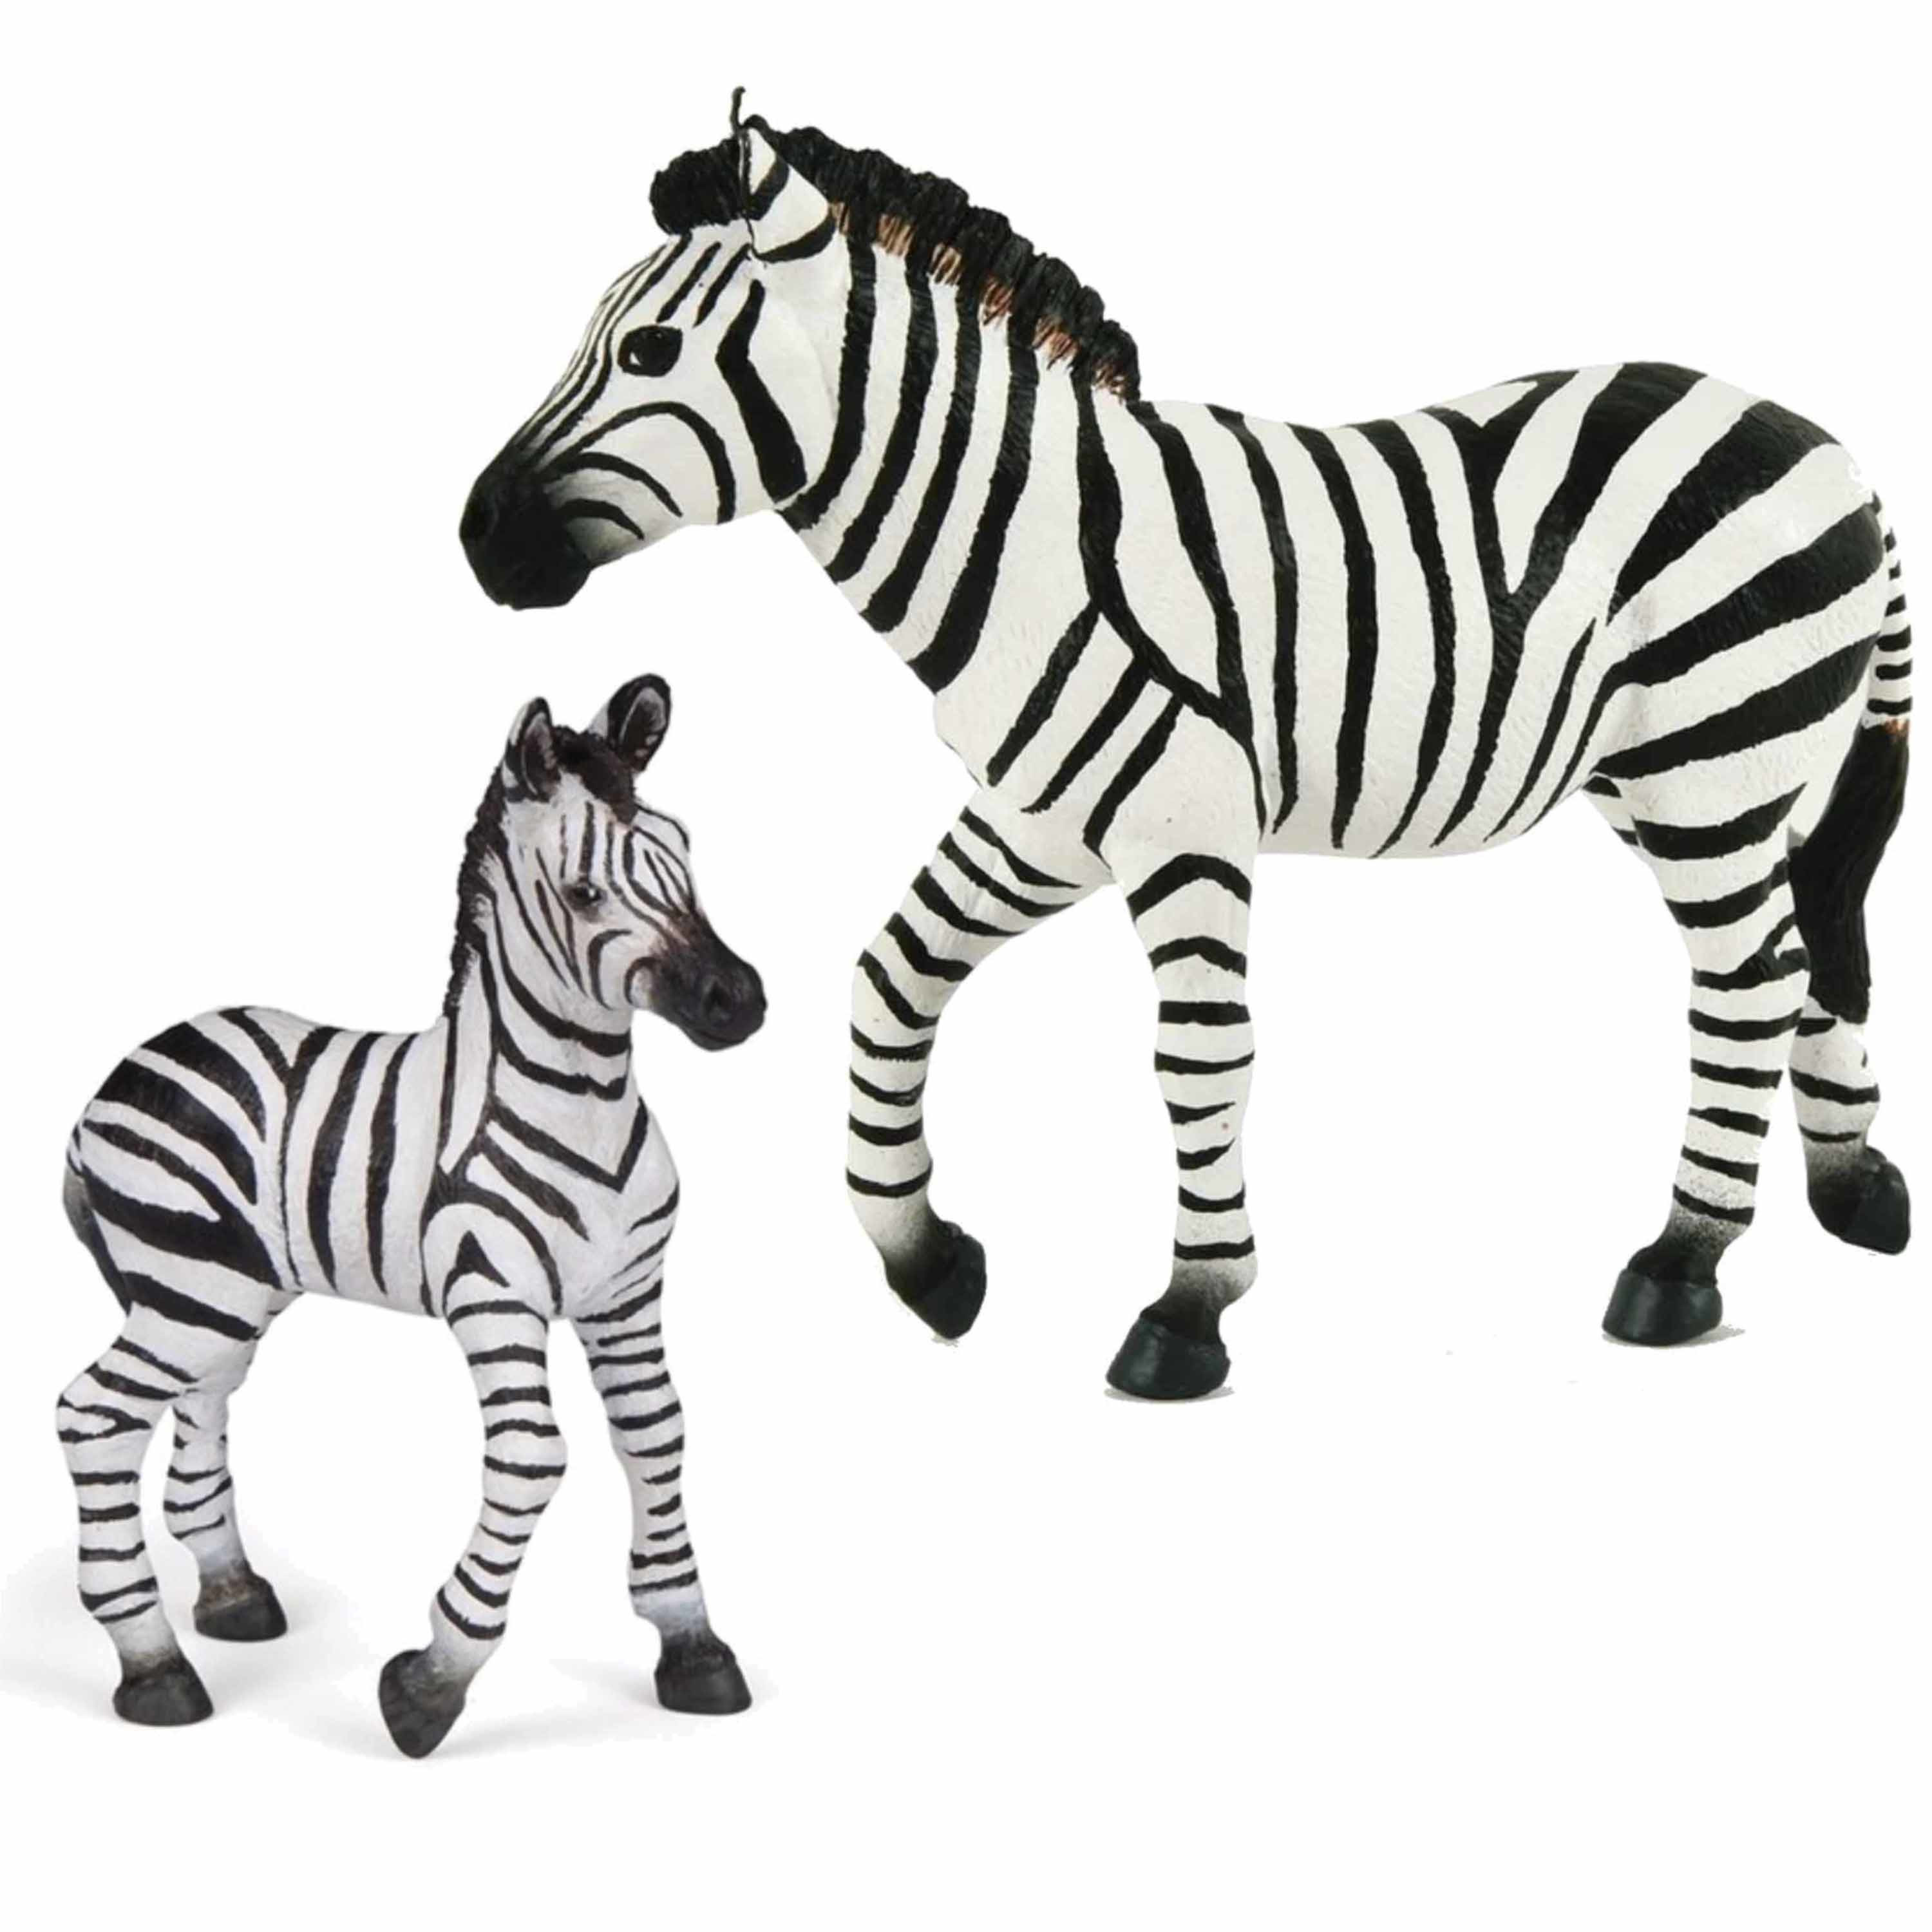 Plastic speelgoed dieren figuren setje zebra familie van moeder en kind